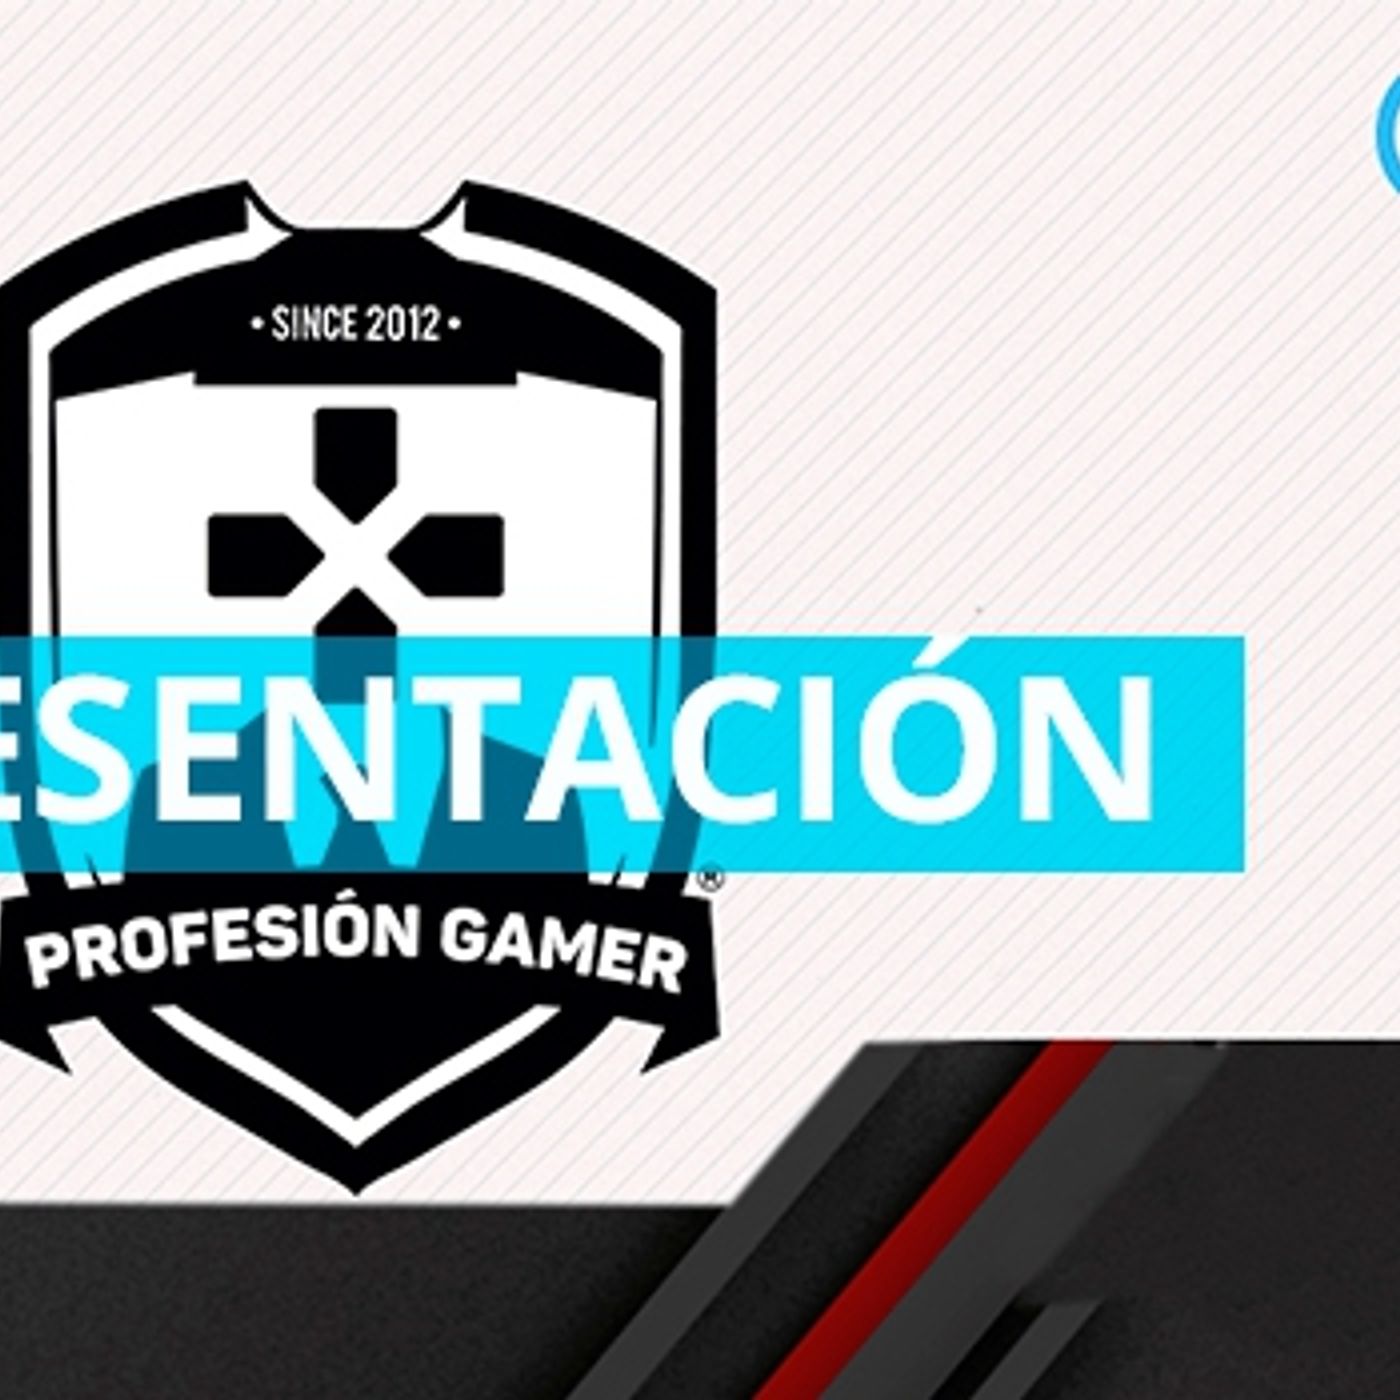 Presentación de Fabián Bueno en "Profesión gamer"